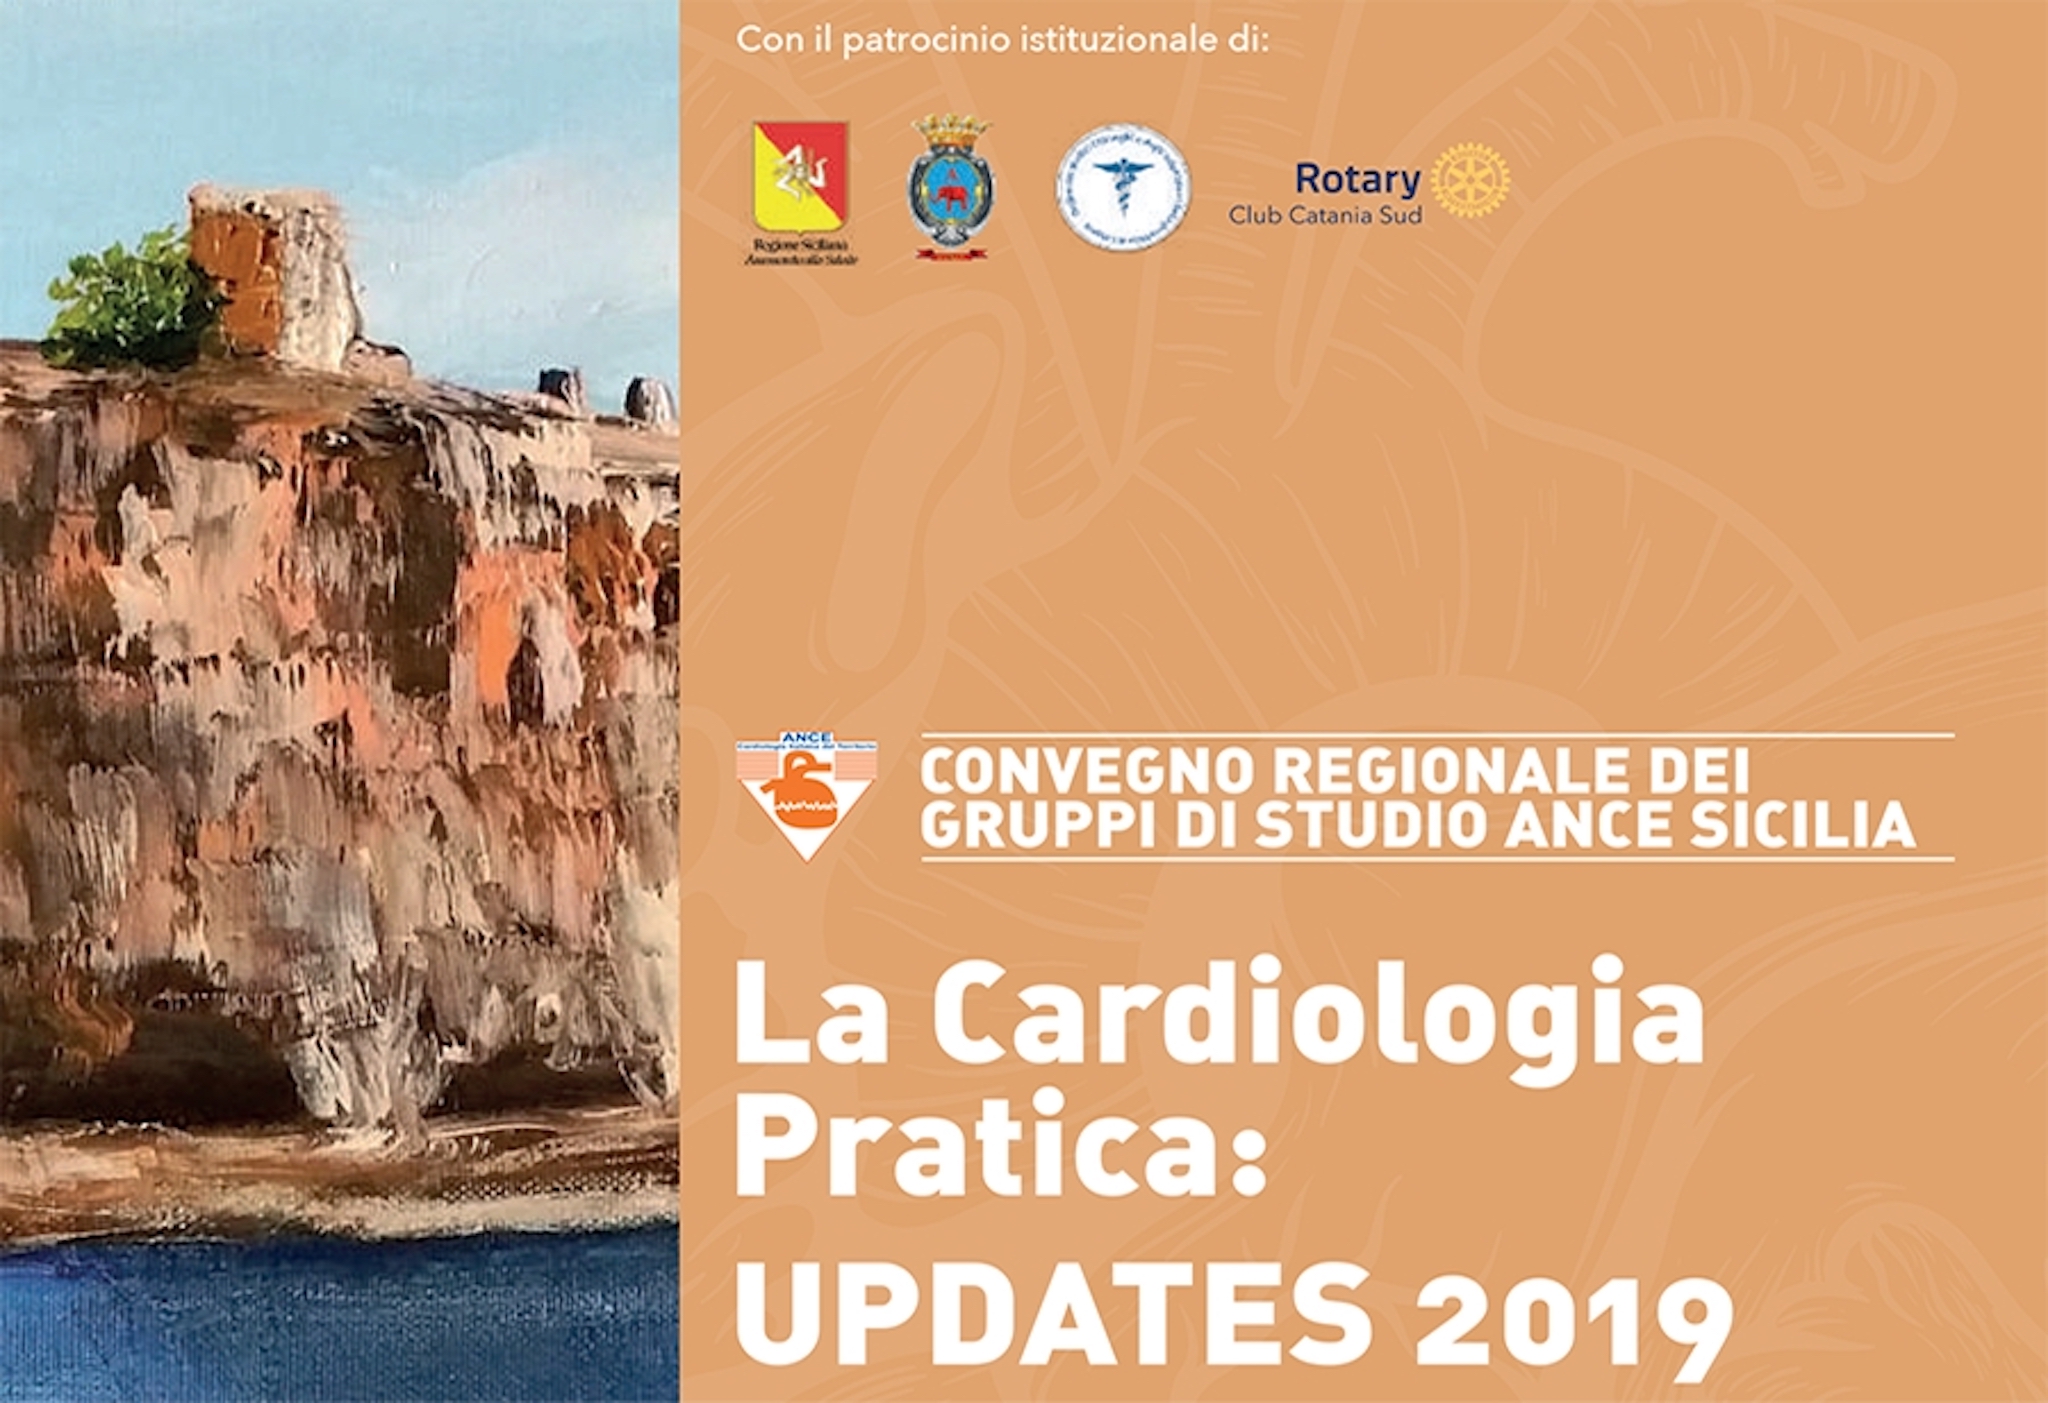 Convegno Regionale dei gruppi di studio Ance Sicilia - La Cardiologia Pratica 23/24-05 